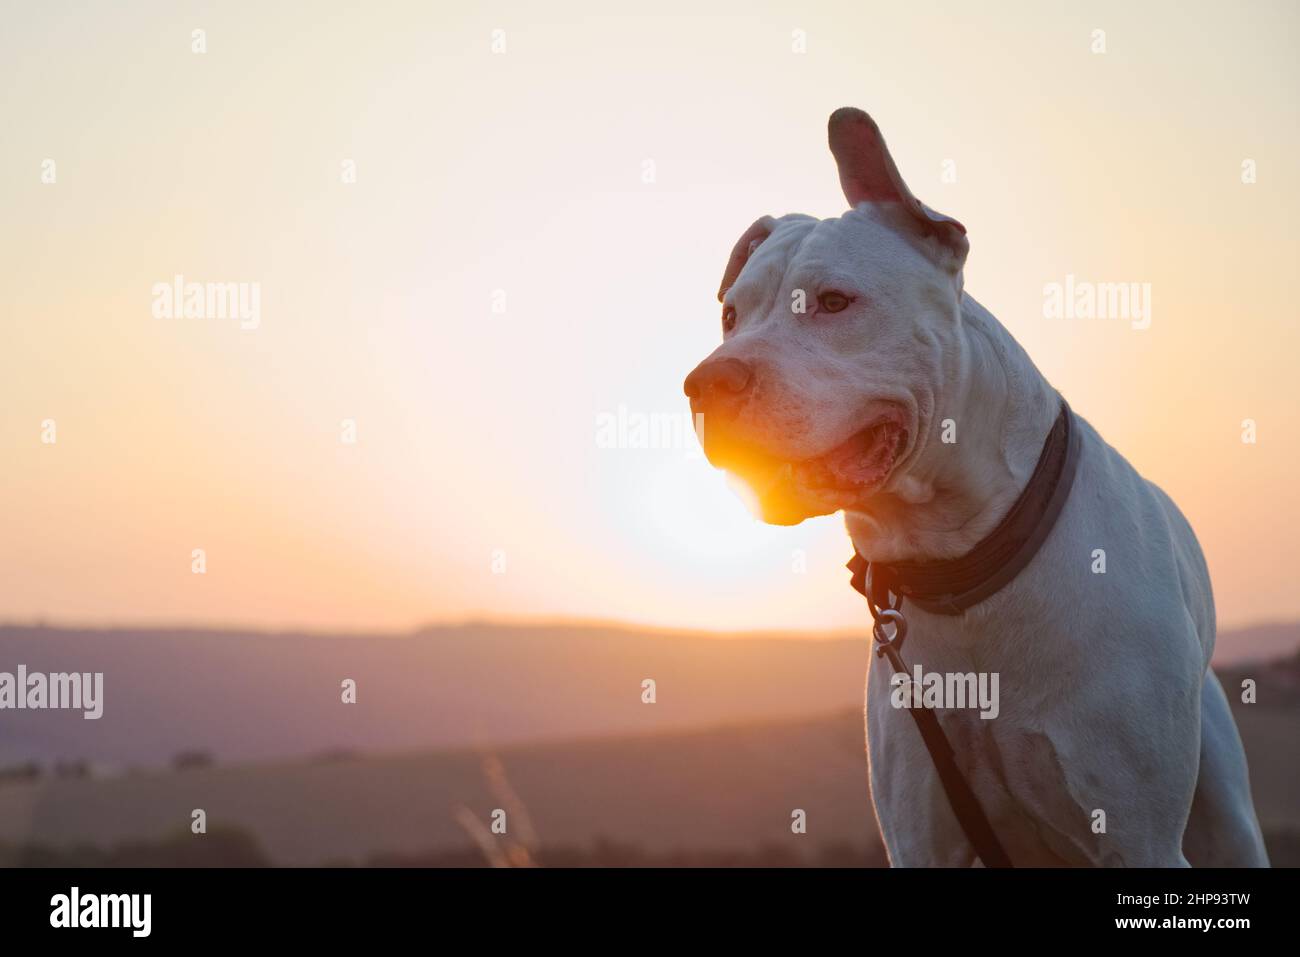 Dogo Argentino Hund bei Sonnenuntergang. Porträt eines argentinischen Hundes in der Natur bei Sonnenlicht. Niedliches Haustier. Stockfoto